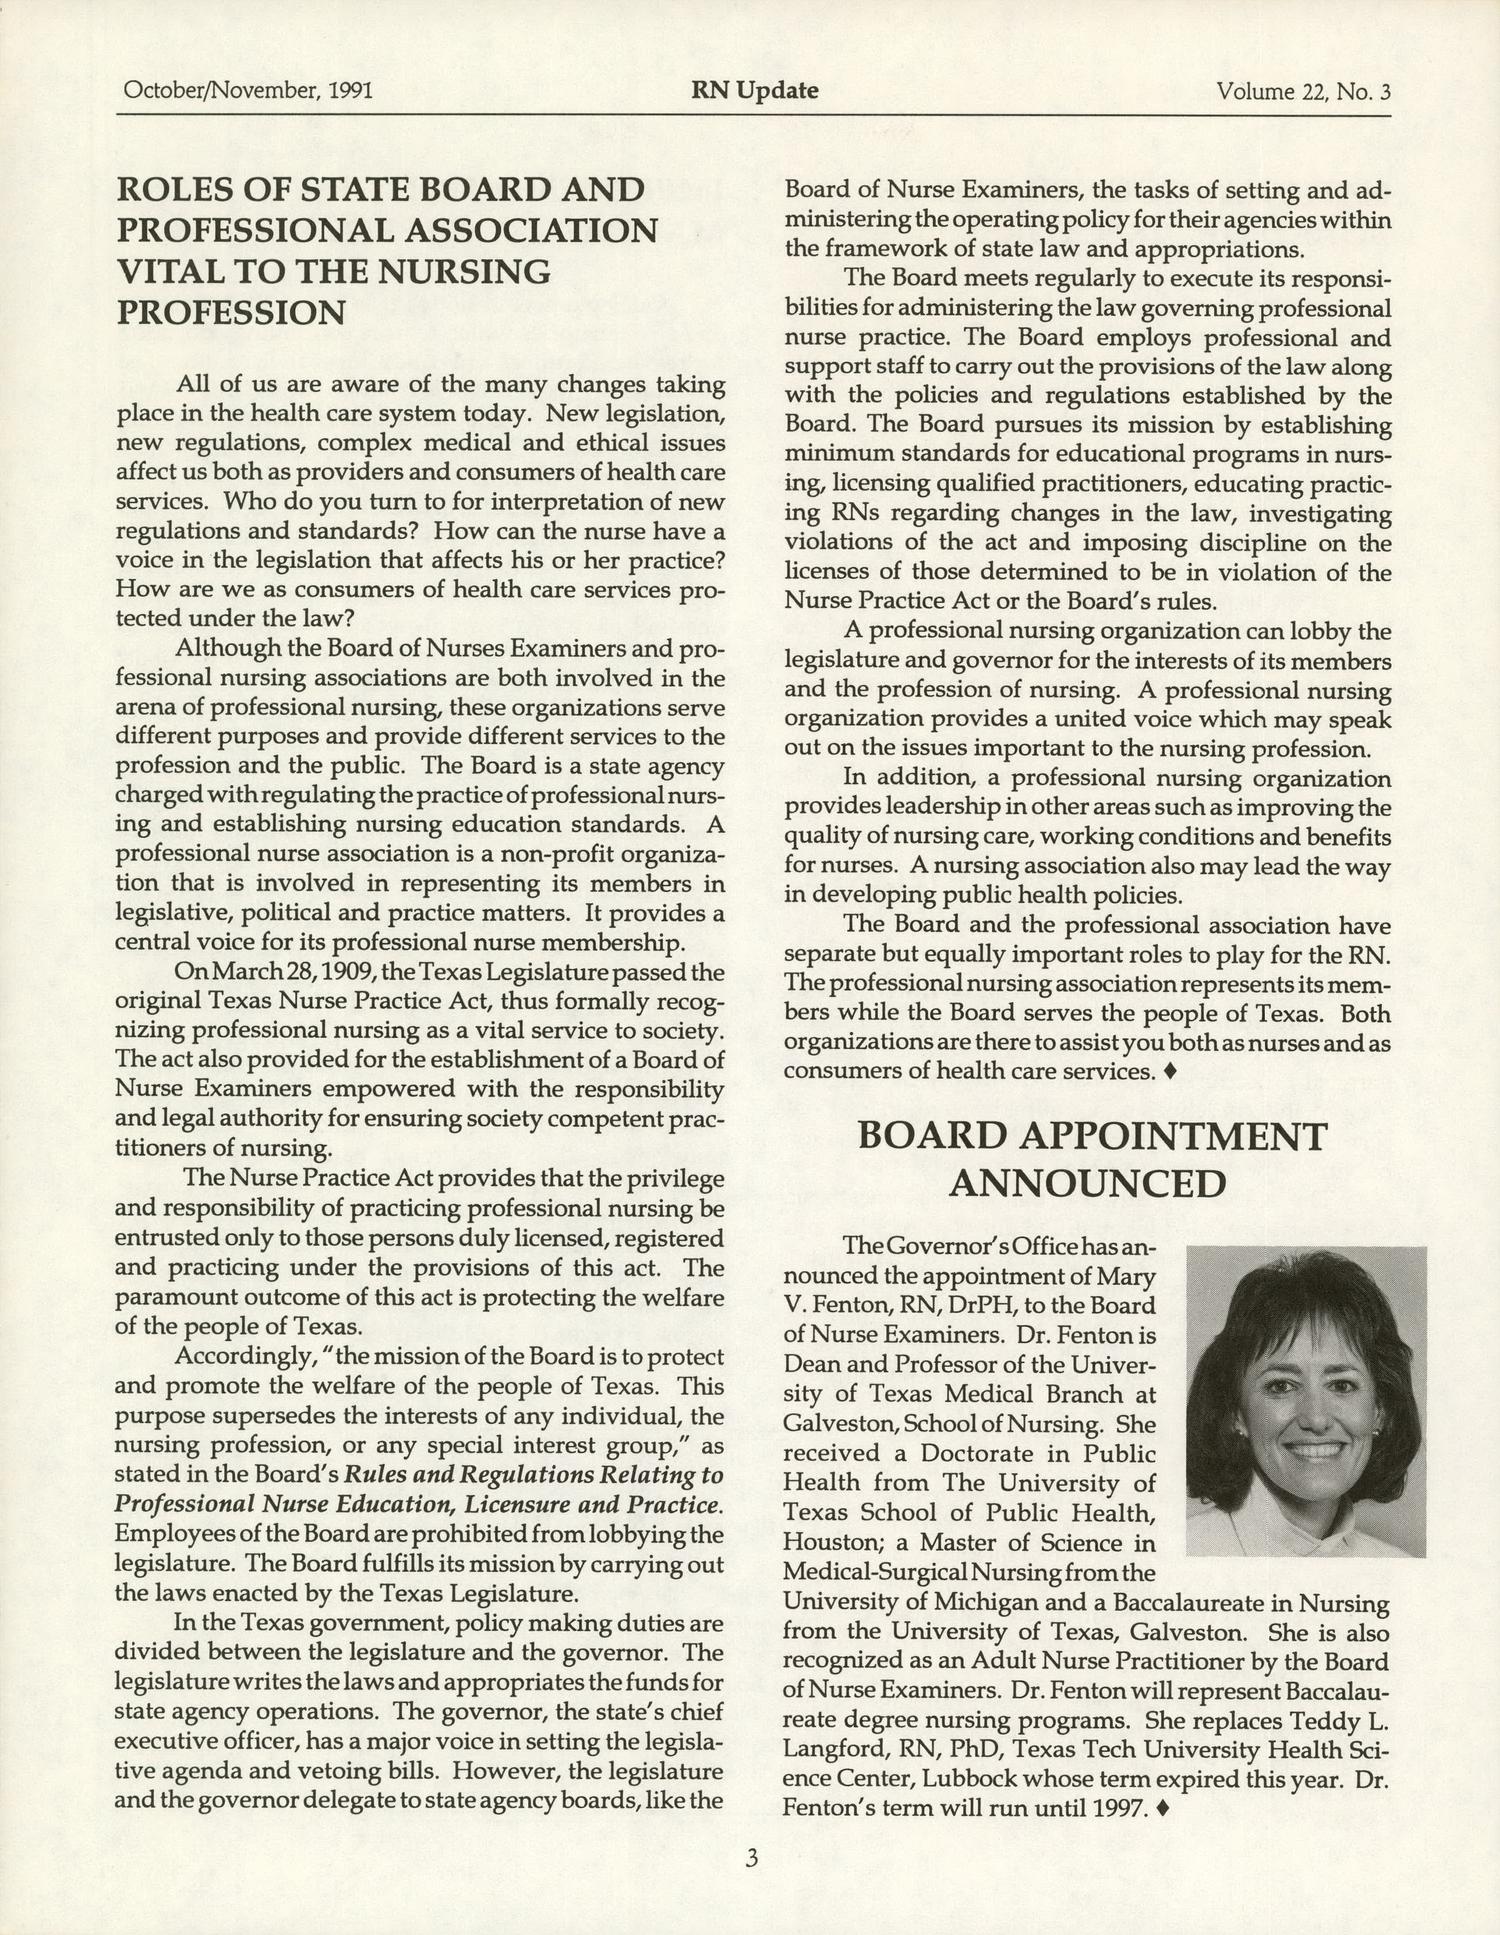 RN Update, Volume 22, Number 3, October/November 1991
                                                
                                                    3
                                                